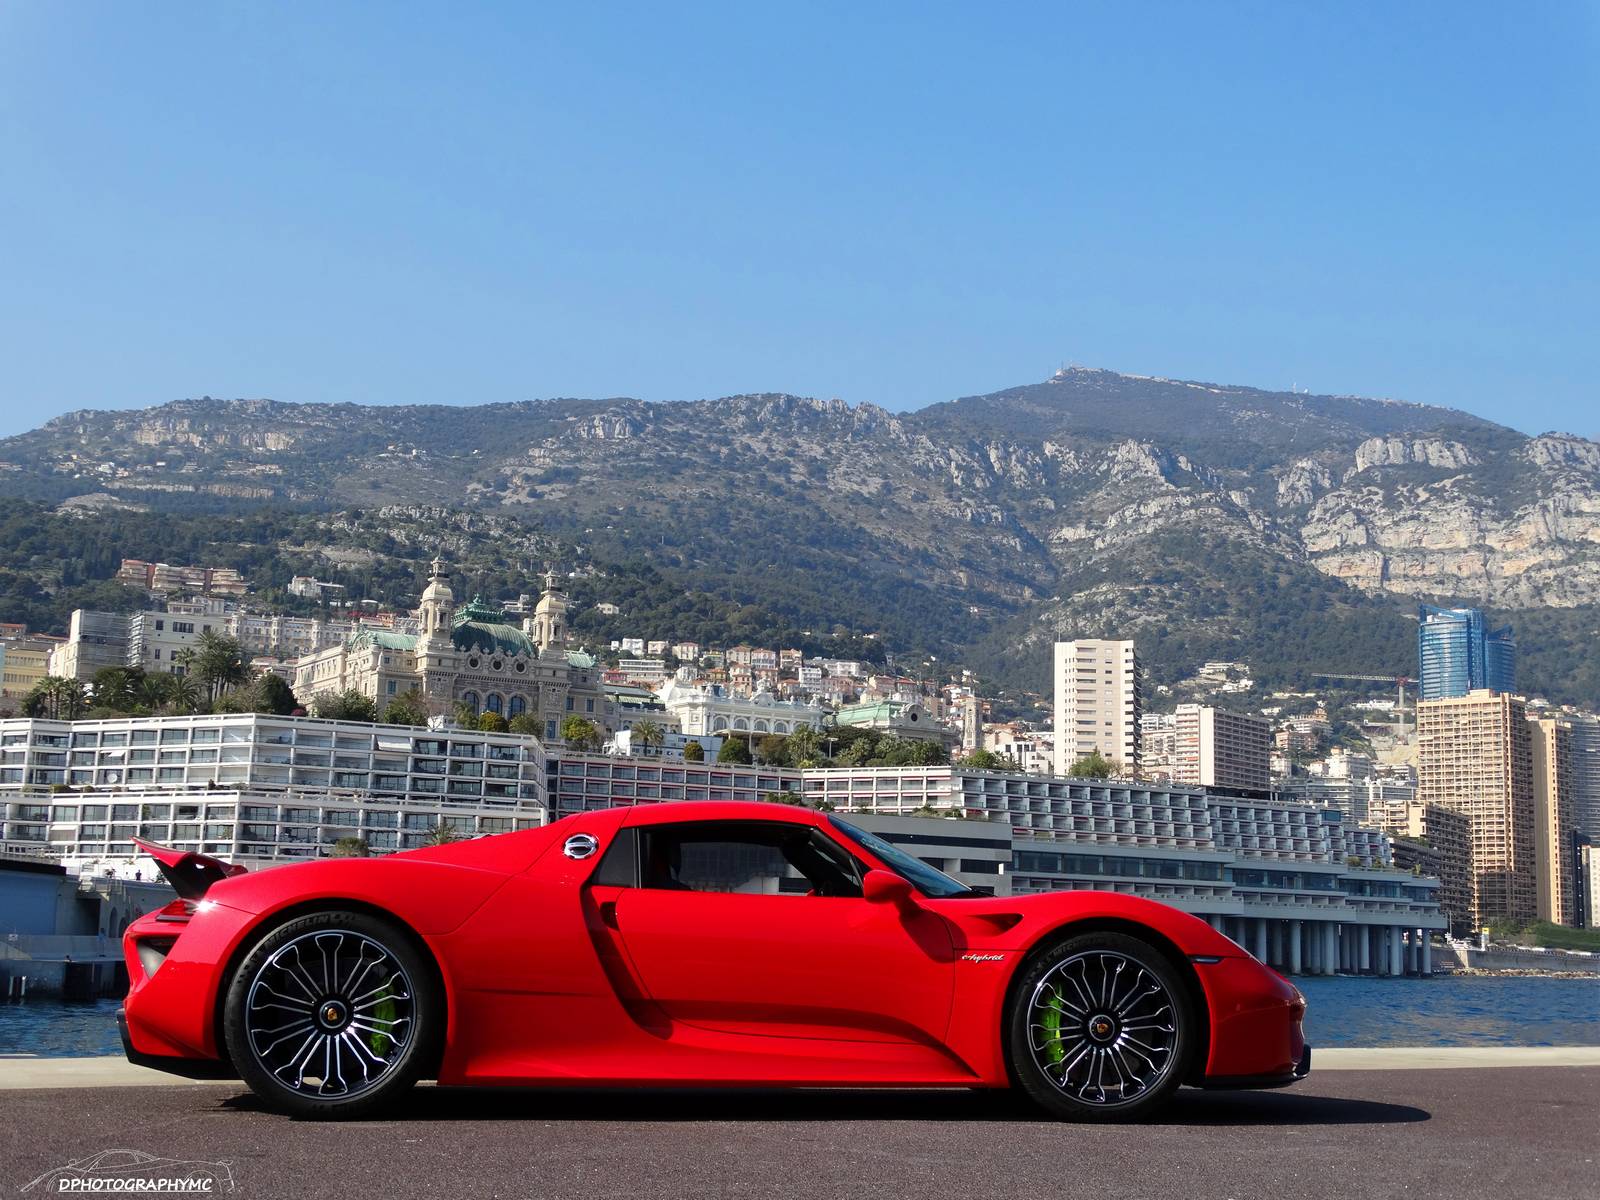 Stunning Red Porsche 918 Spyder Photoshoot in Monaco